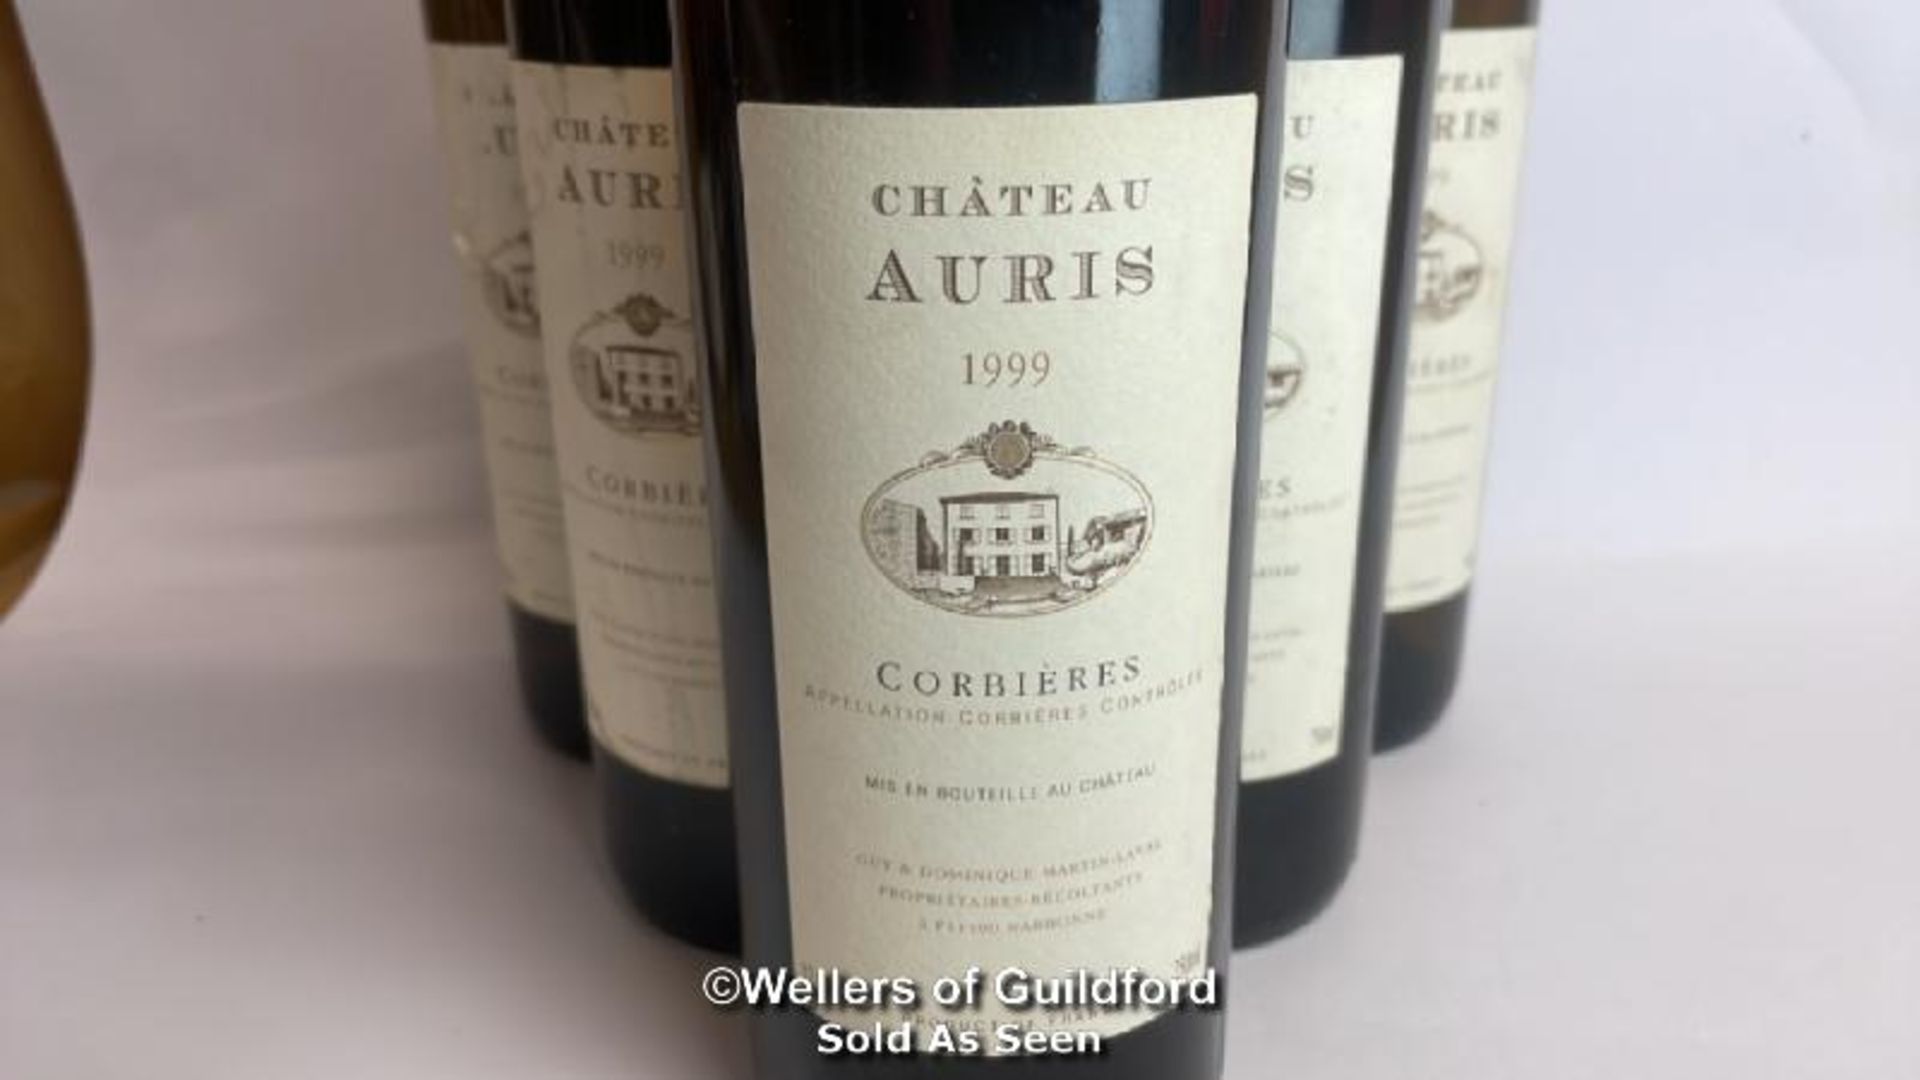 Six bottles of 1999 Chateau Auris Corbieres, Mis En Boutille Au Chateau, 75cl, 12.5% vol / Please - Image 4 of 8